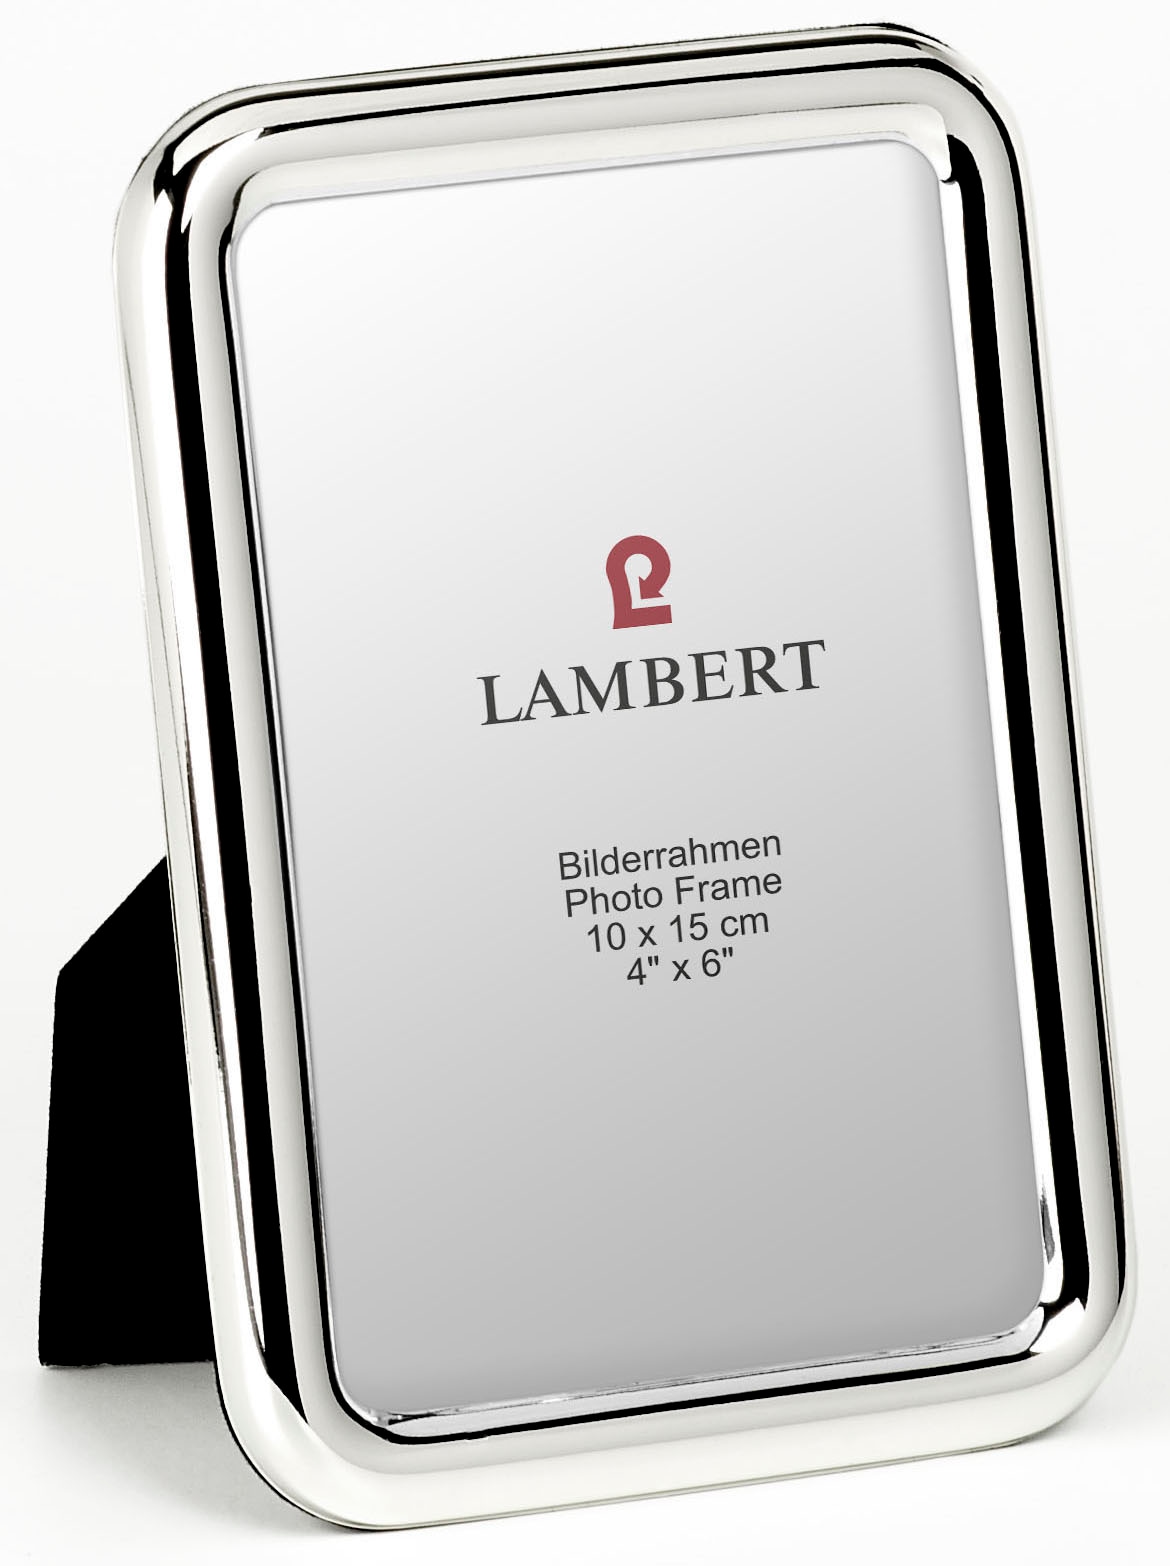 ♕ Lambert jetzt versandkostenfrei bei Schweiz Ackermann bestellen